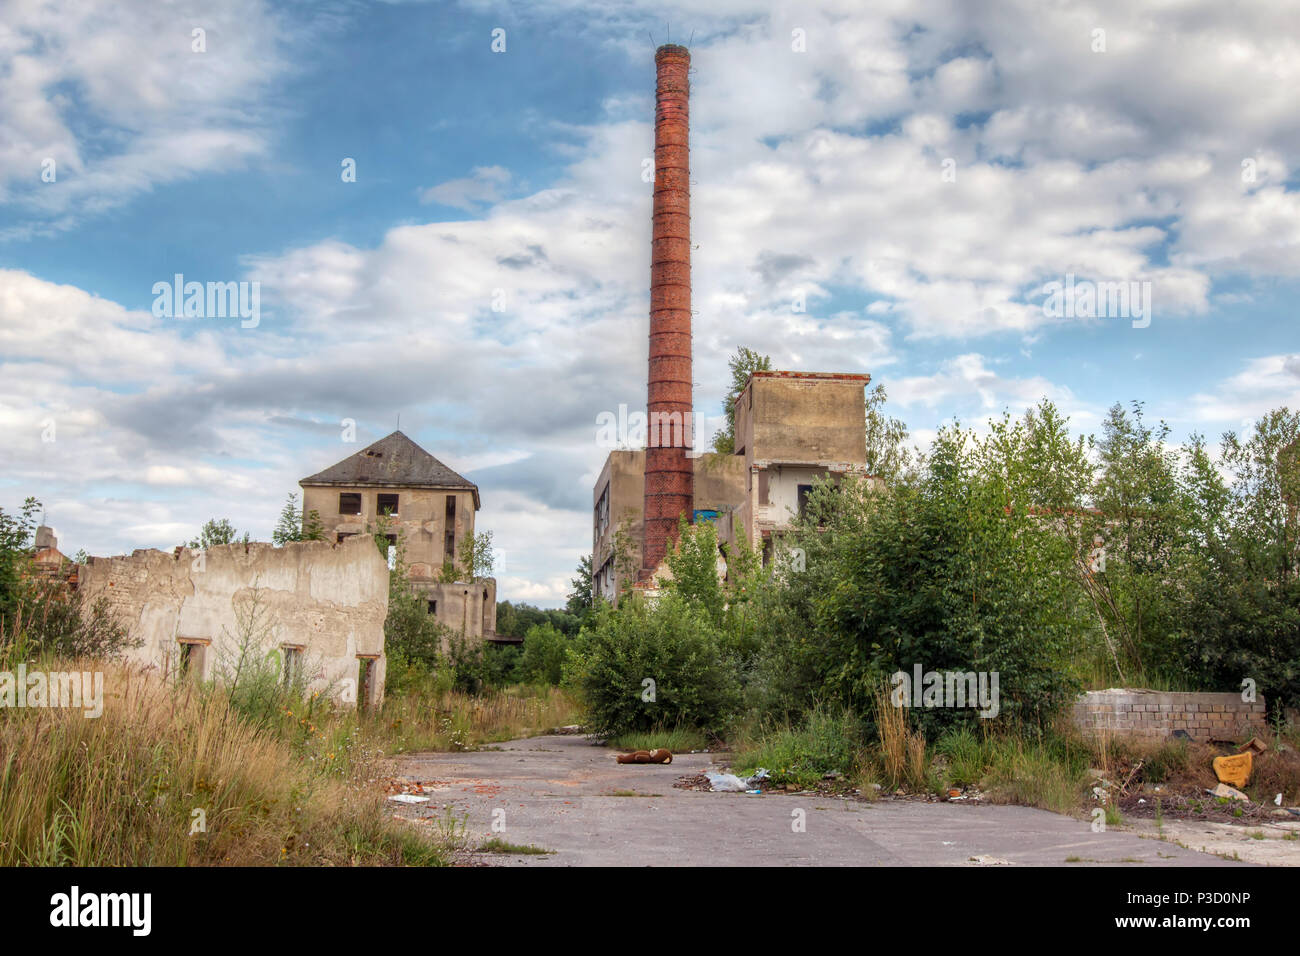 Verloren plüschbär in einer verlassenen Fabrik Stockfoto